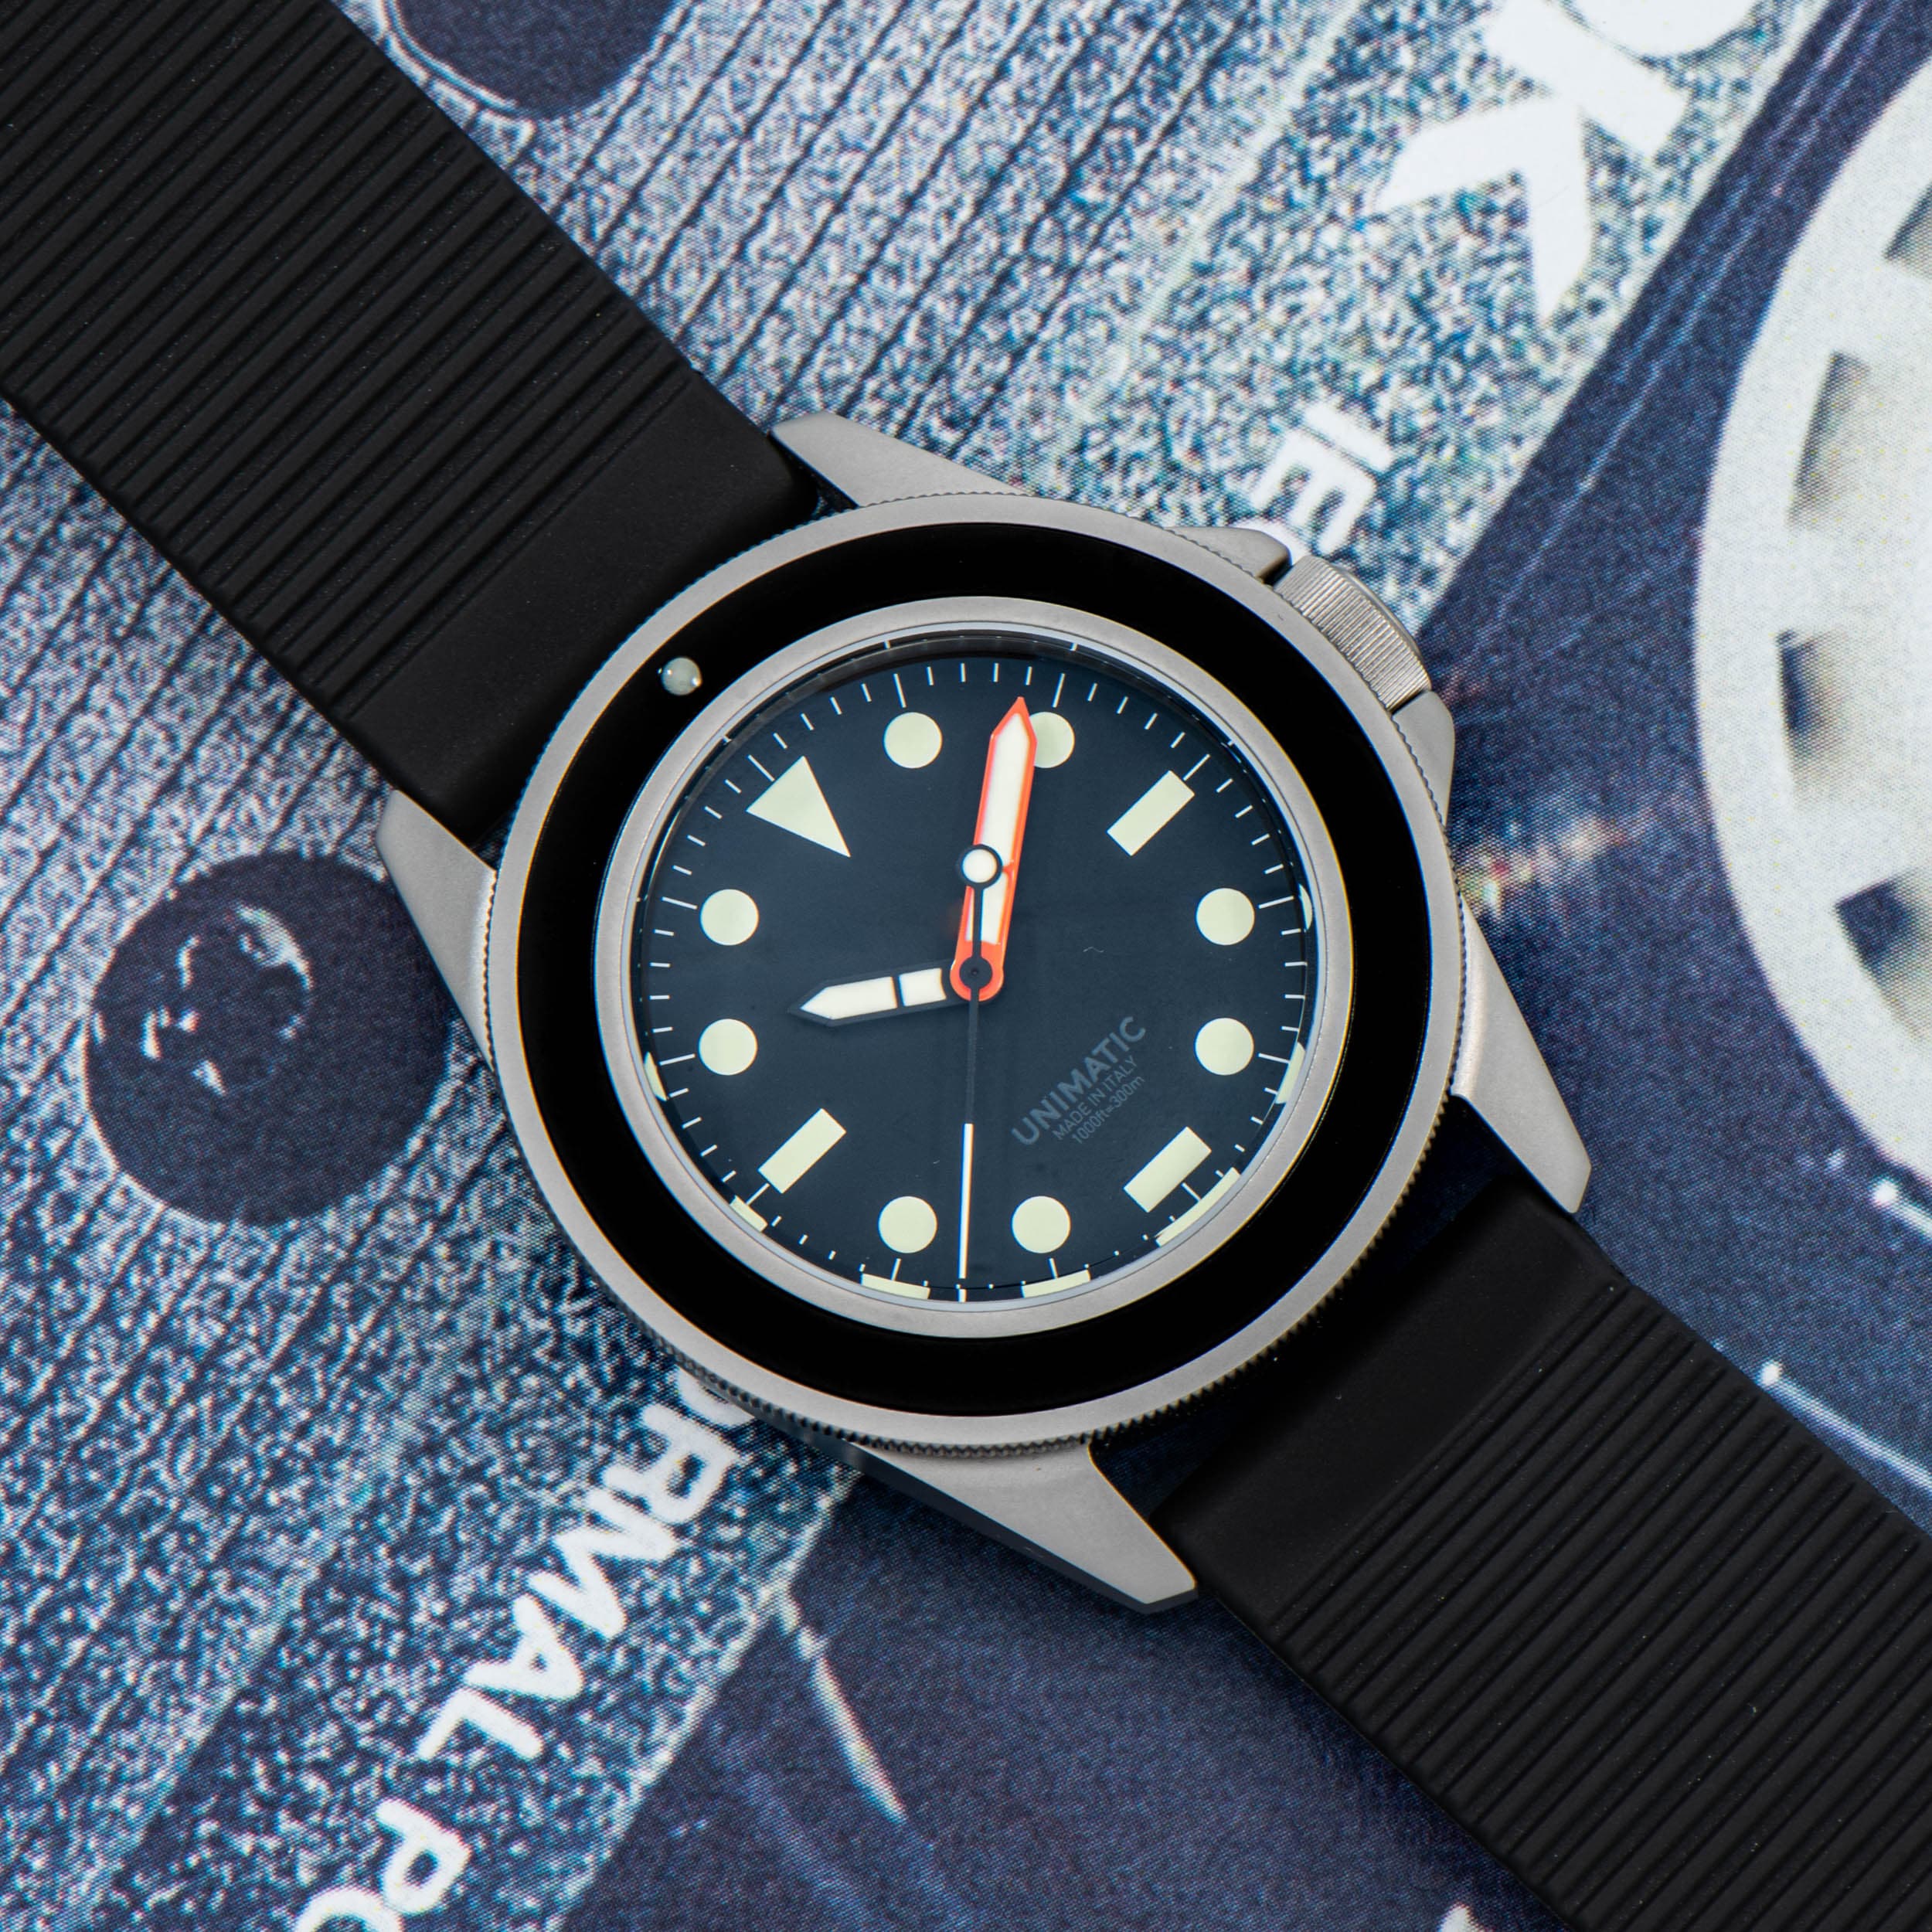 Unimatic U4 Classic - Exquisite Timepieces